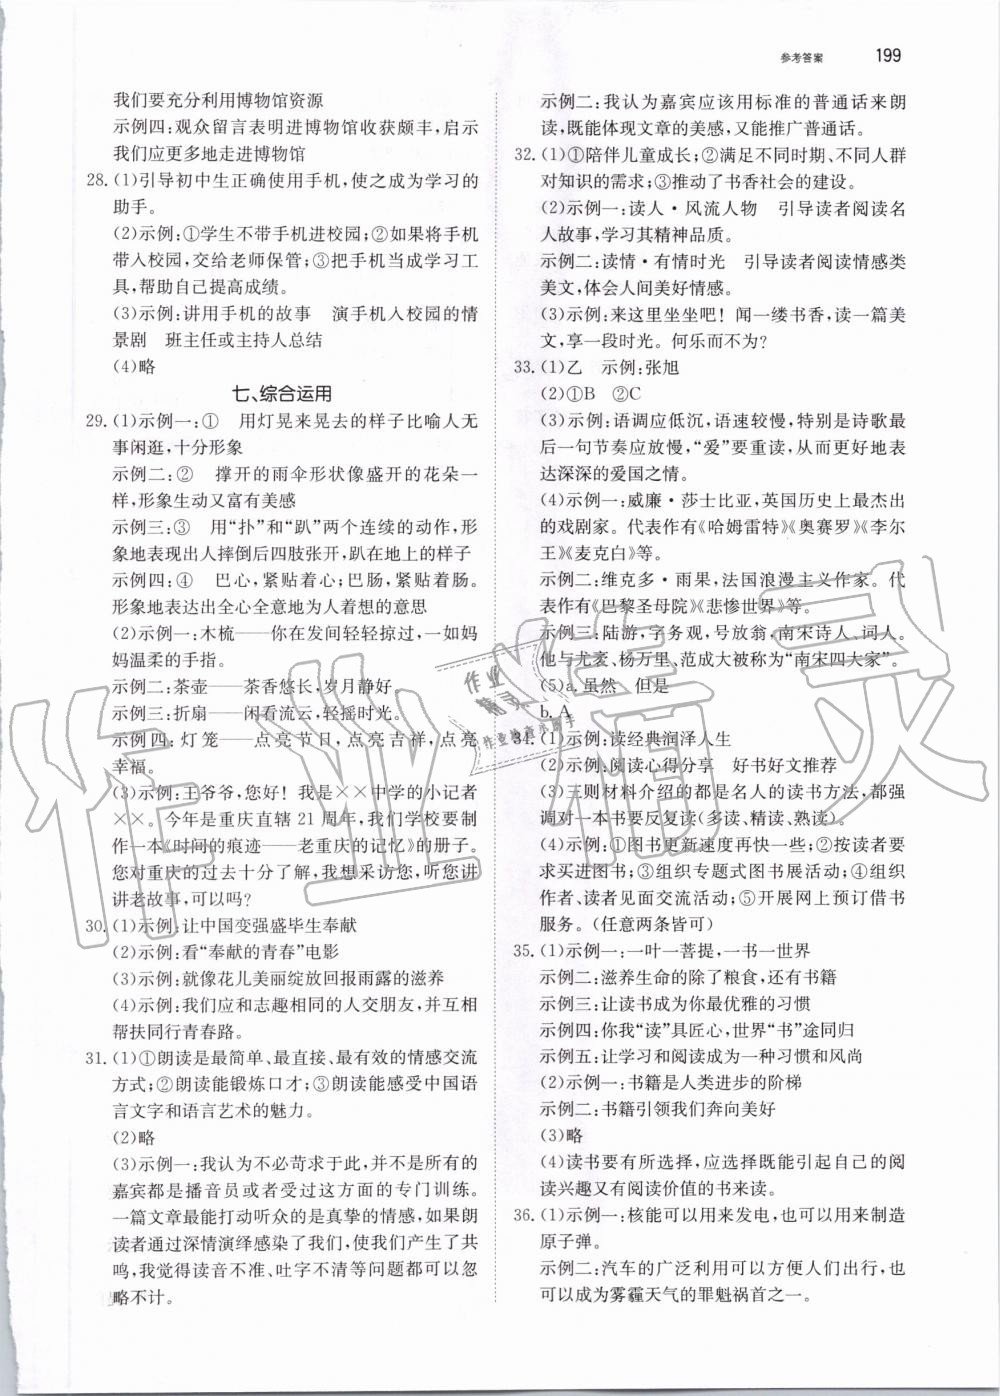 2019年锐阅读初中语文阅读训练5合1中考 第45页